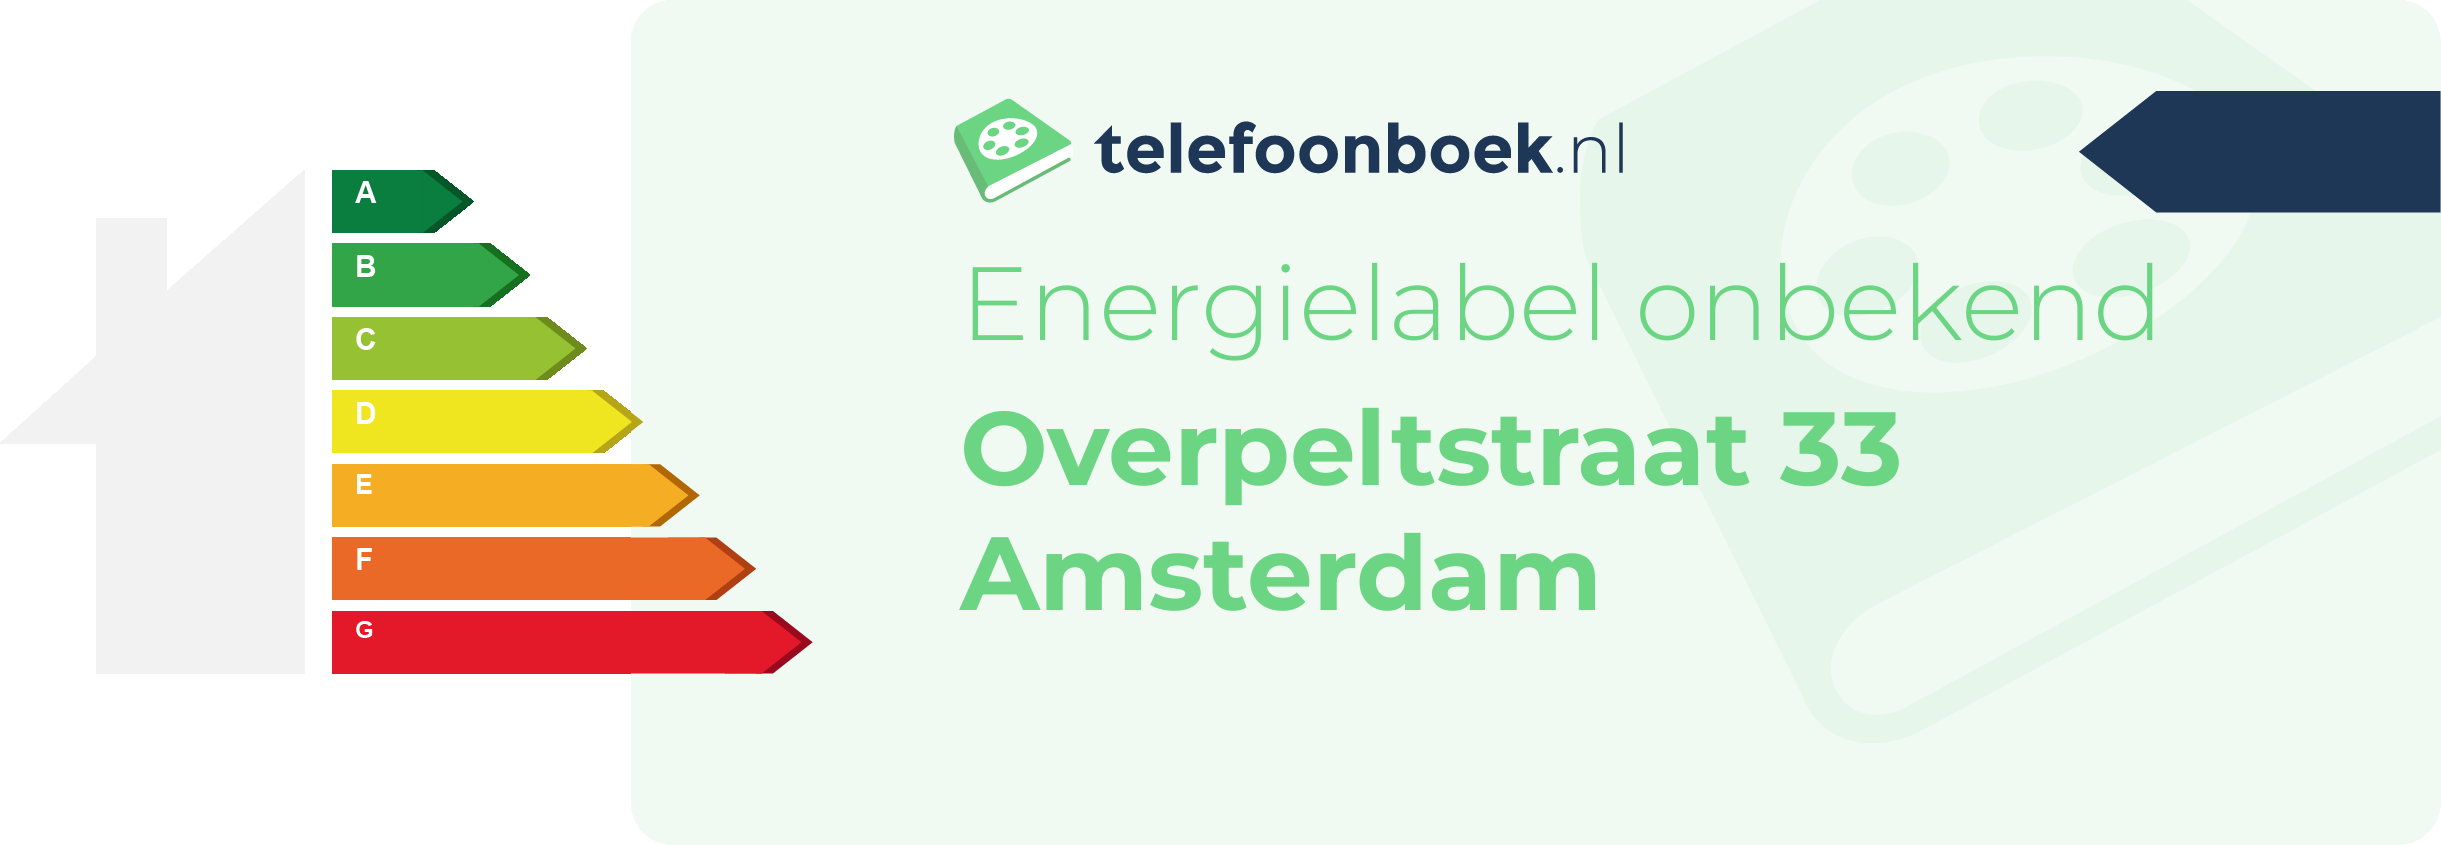 Energielabel Overpeltstraat 33 Amsterdam